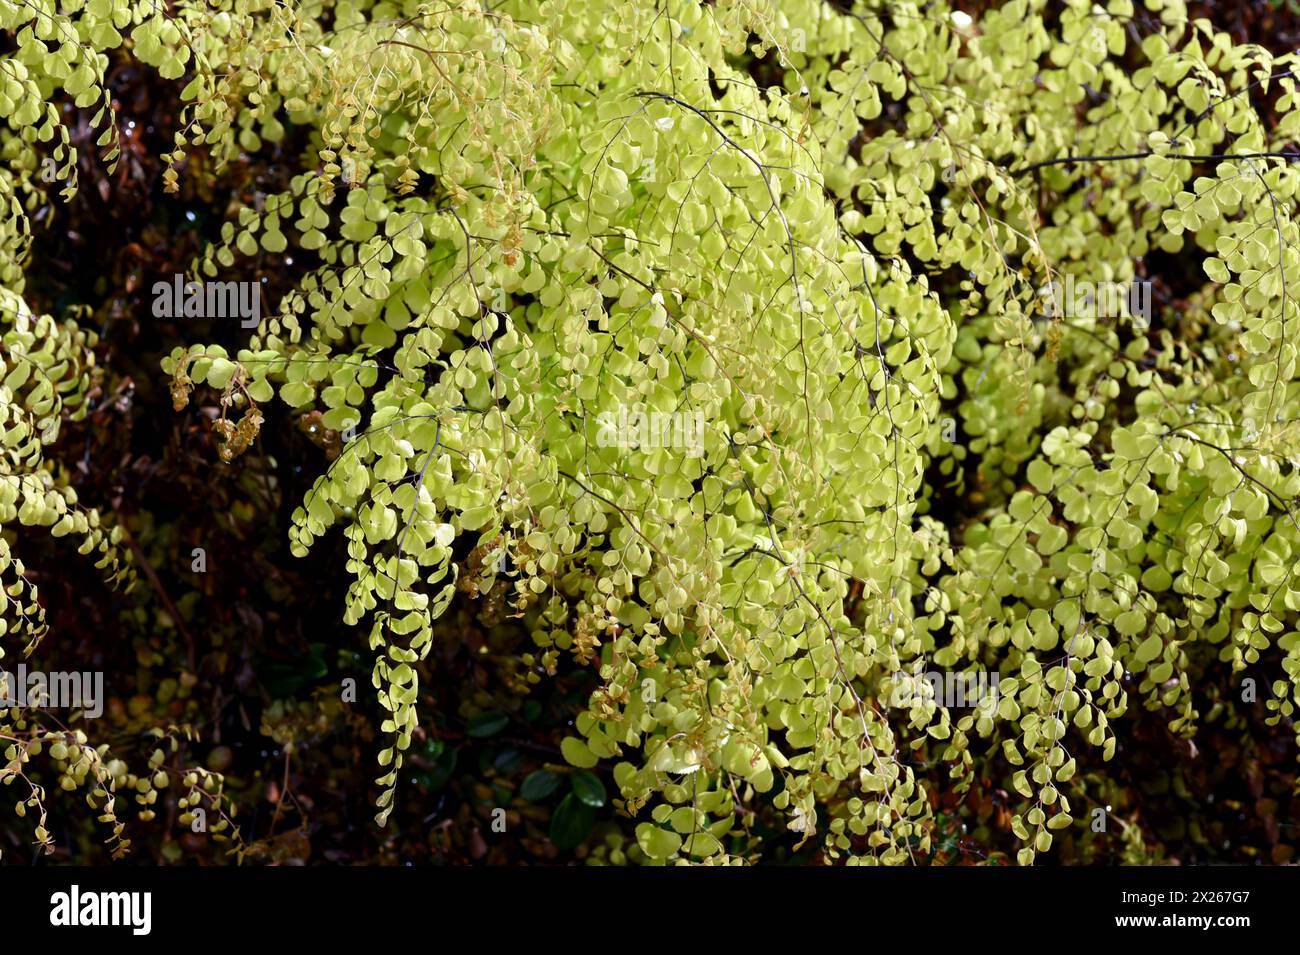 Frauenhaarfarn, Adiatum Venustum ist eine Farnart mit filigranen Blaettern. Maidenhair fern, Adiatum Venustum, is a species of fern with delicate leav Stock Photo